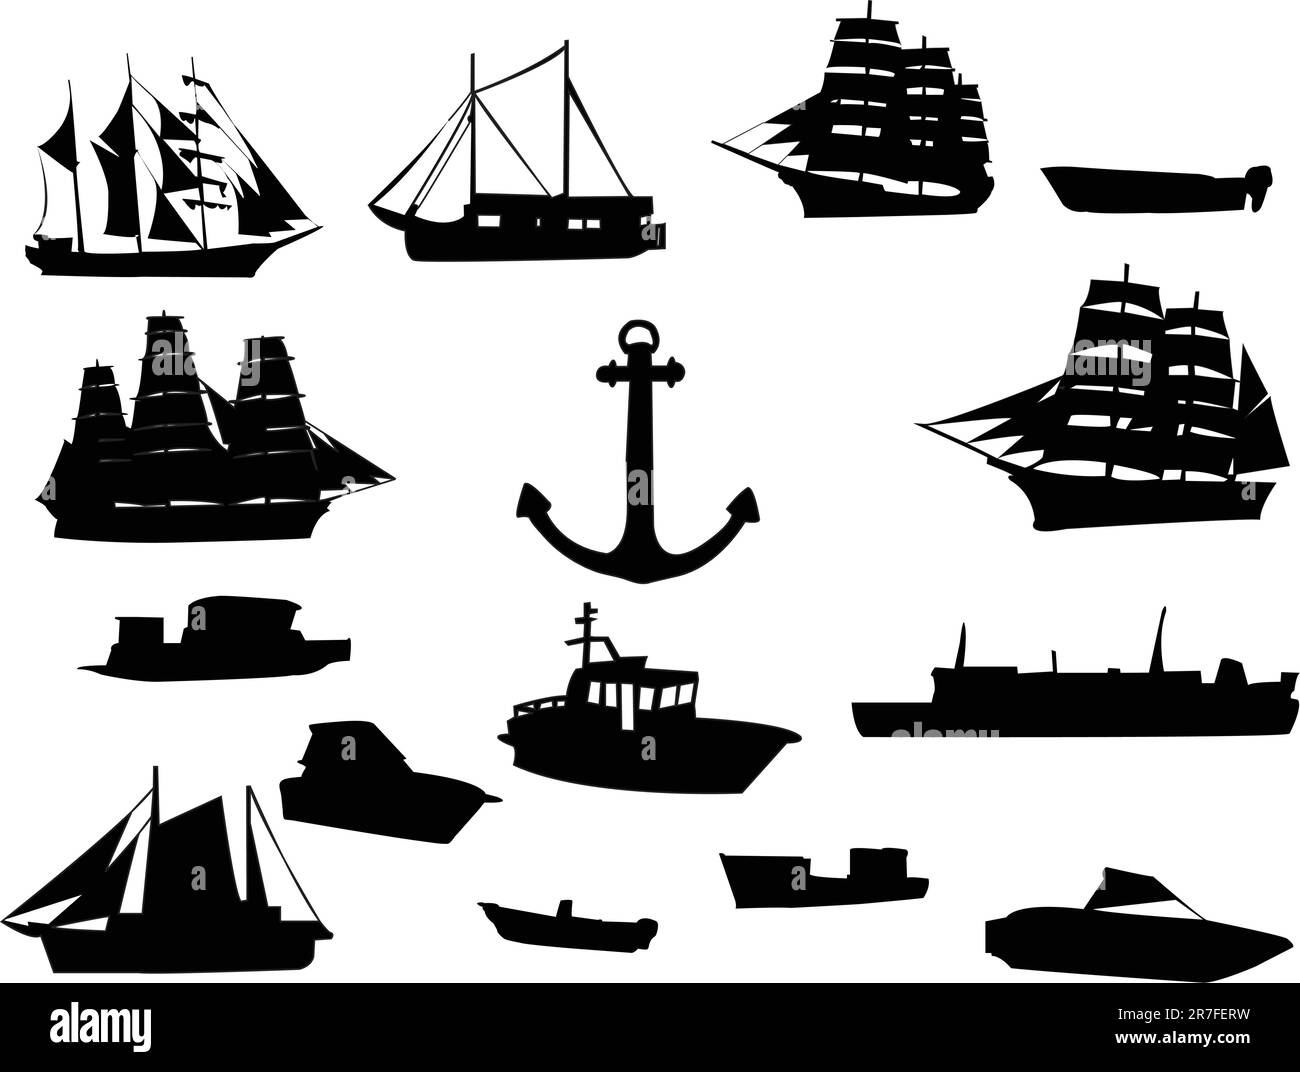 raccolta delle navi - vettore Illustrazione Vettoriale